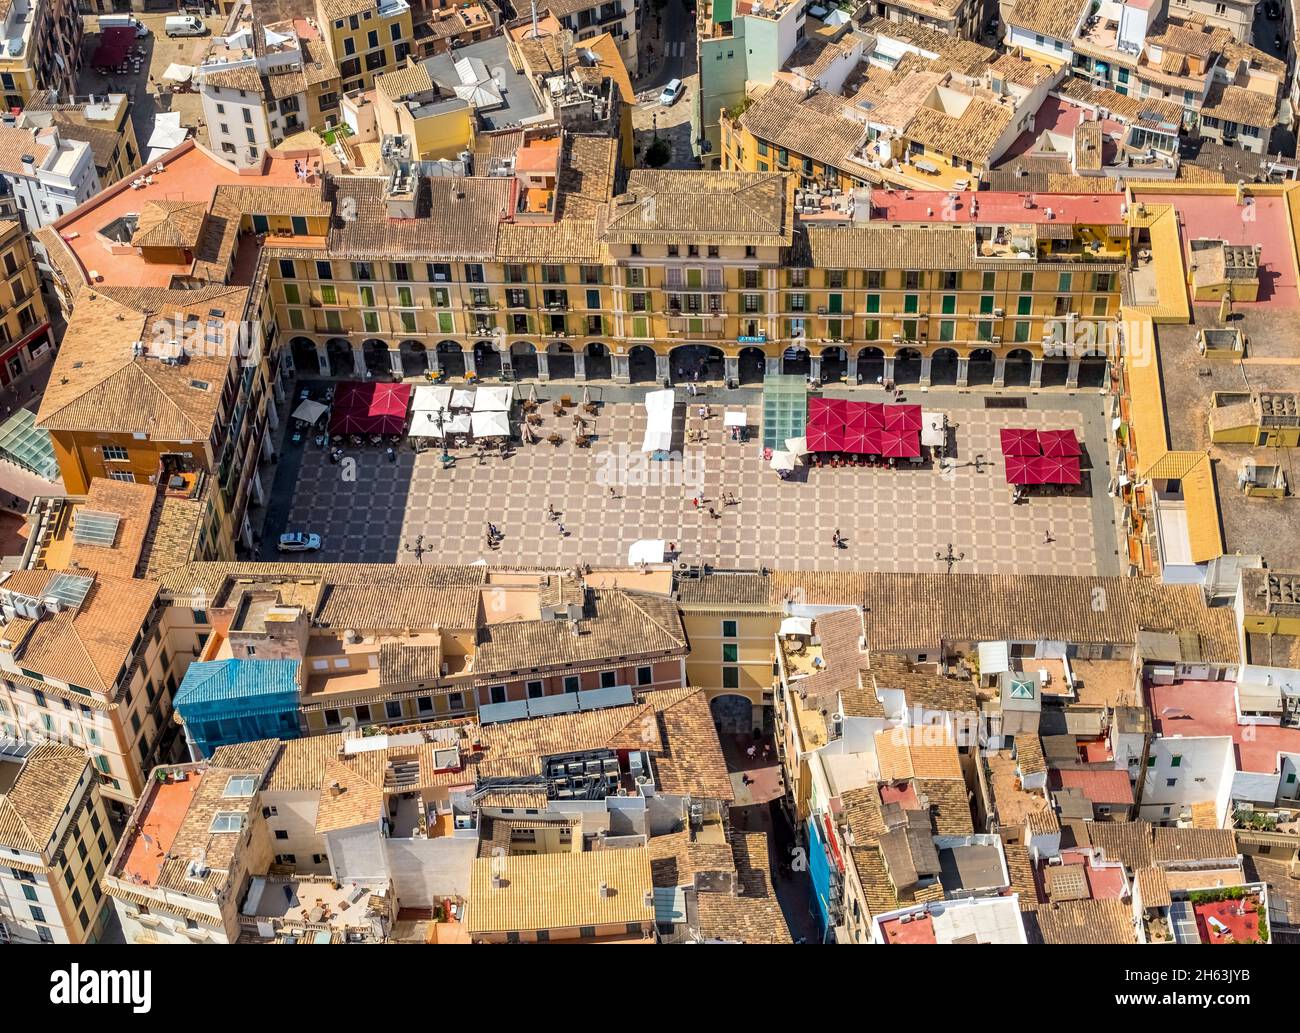 vue aérienne, plaça major, place historique avec cafés, palma, majorque, iles baléares, espagne Banque D'Images